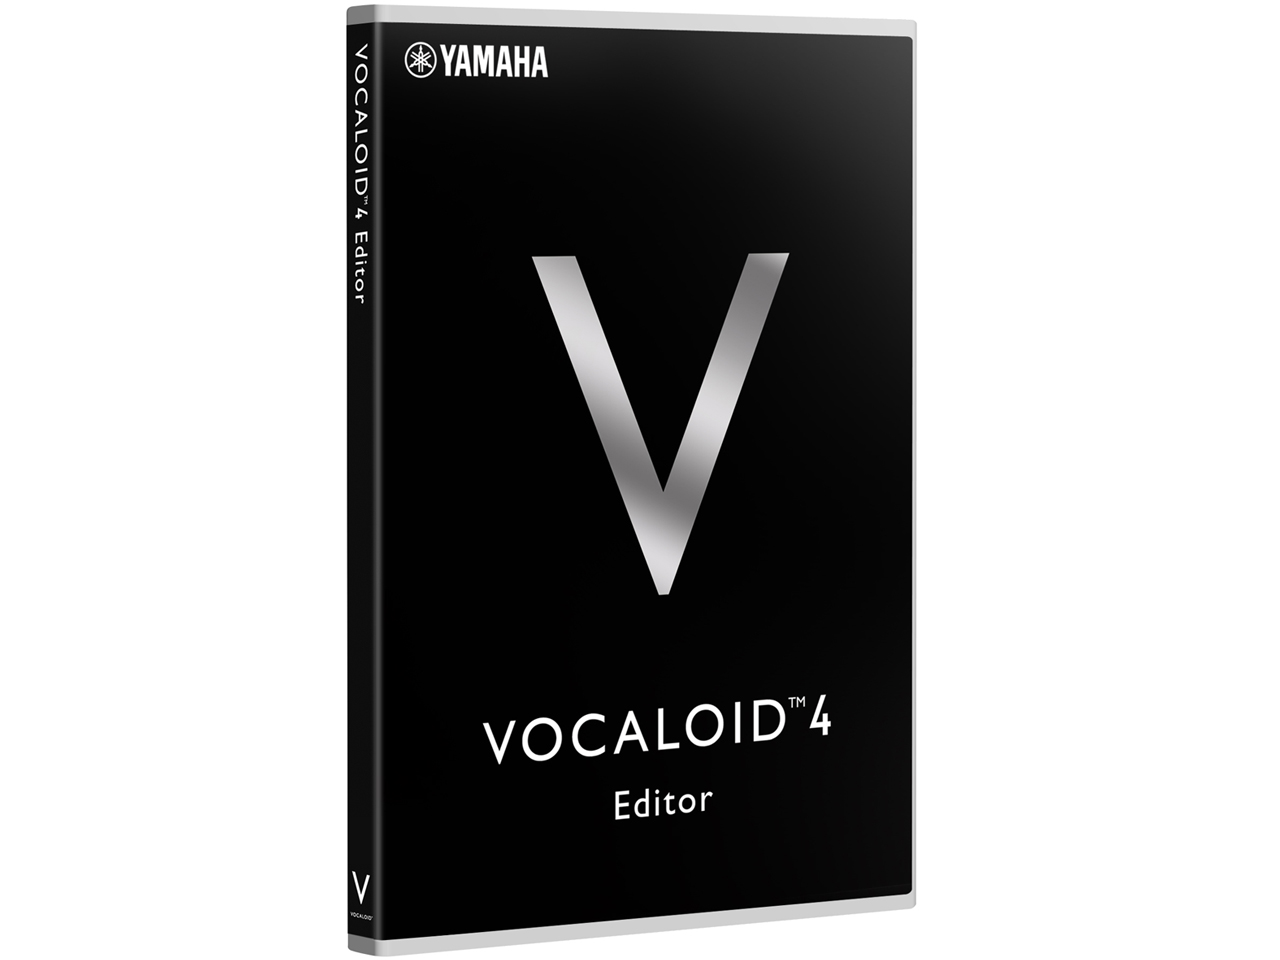 価格.com - VOCALOID4 Editor の製品画像